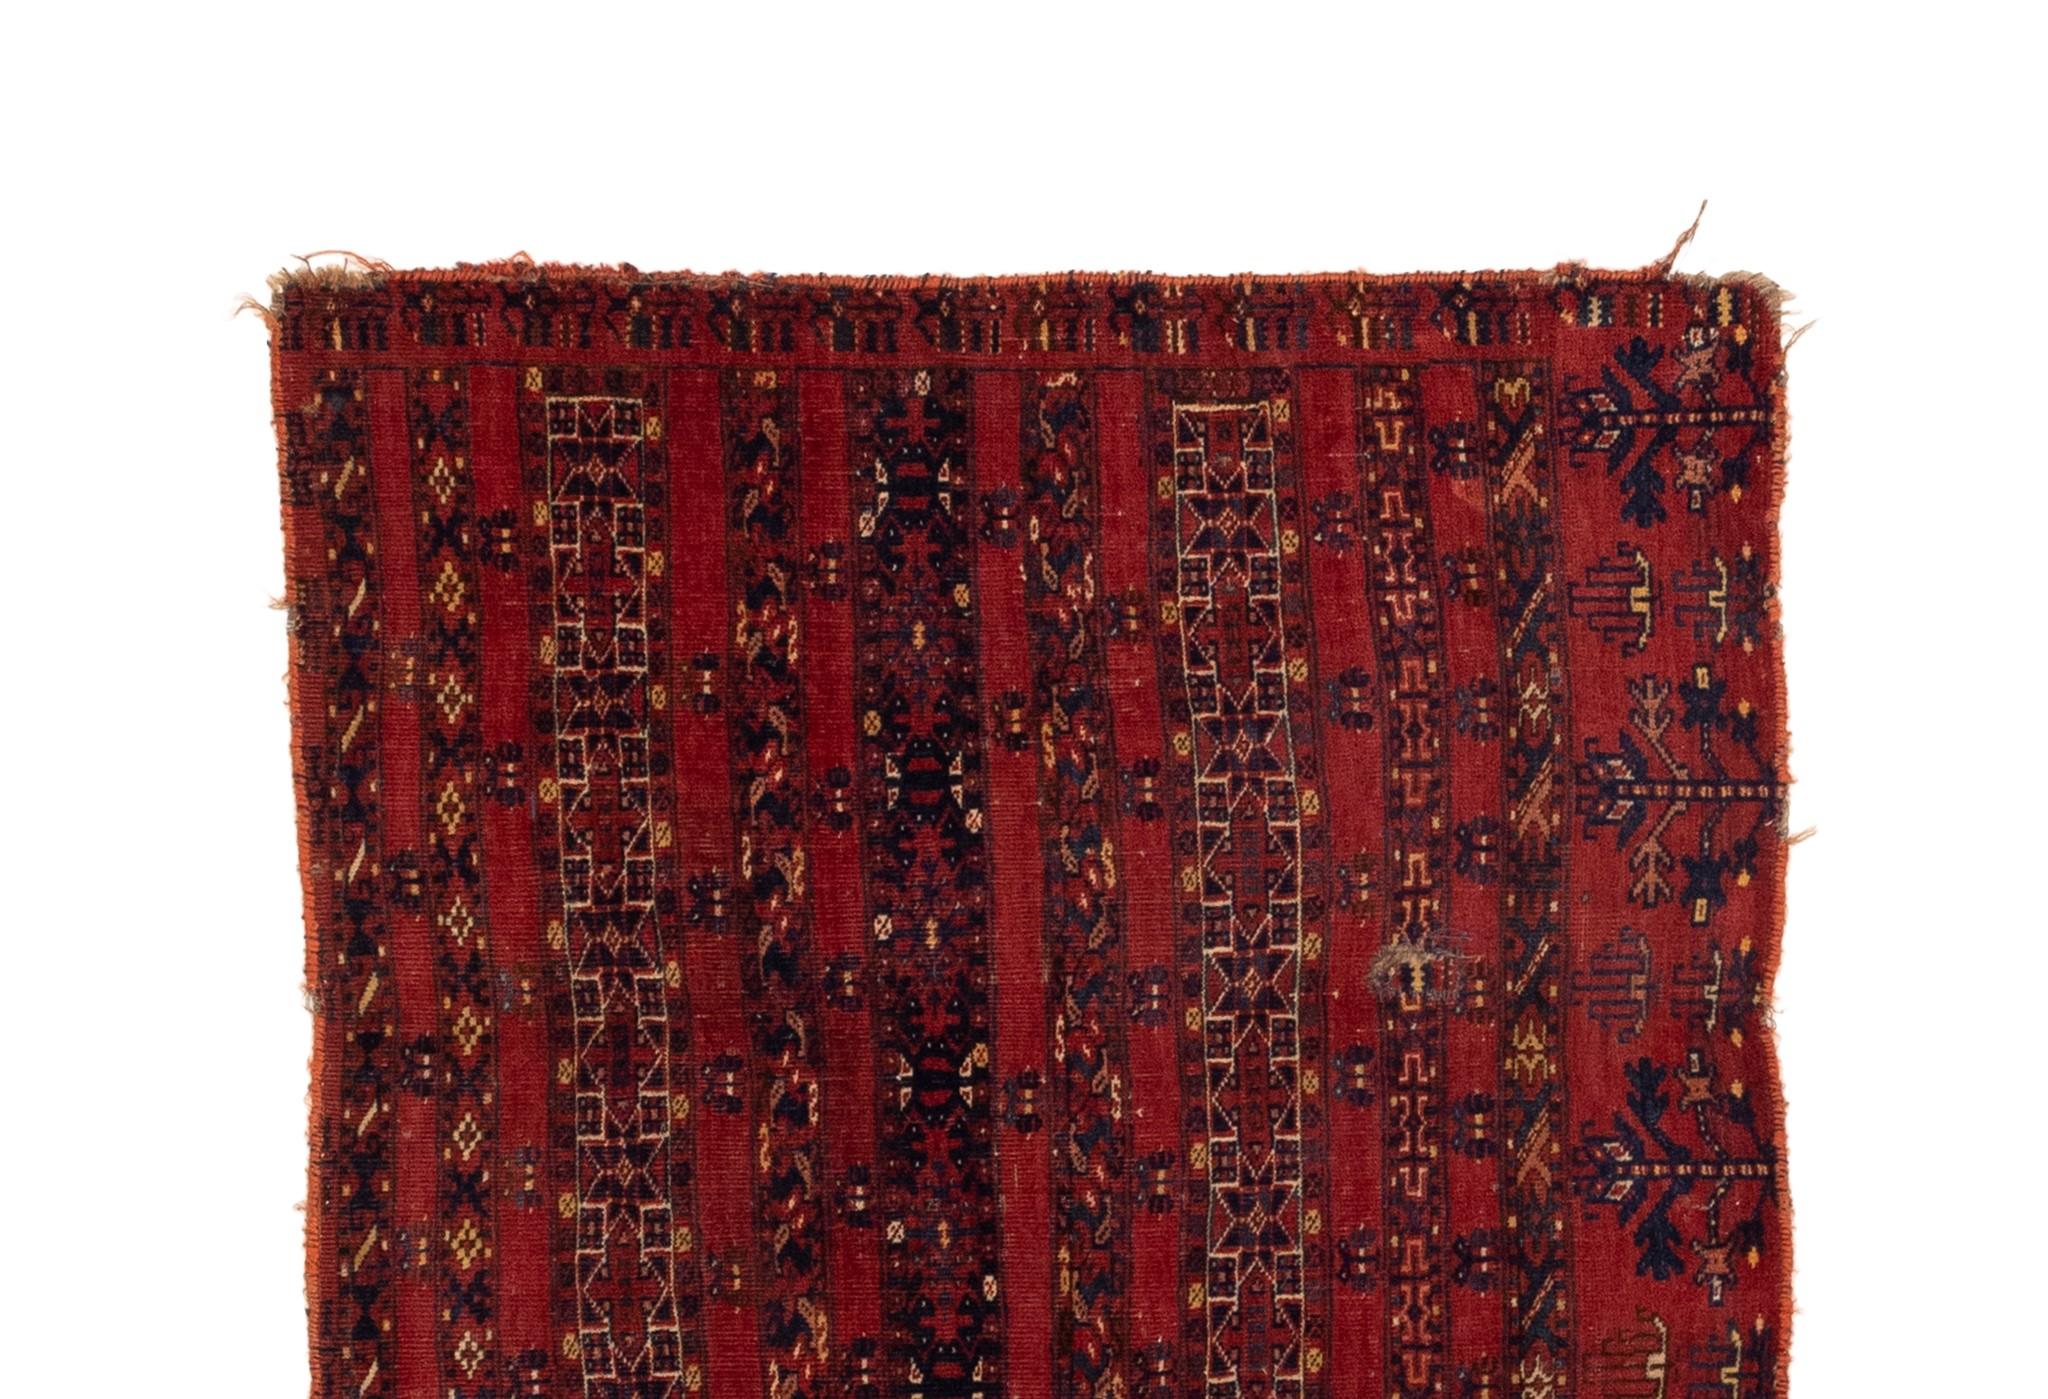 Ce tapis antique Turkaman Trival est un bel exemple d'une pièce qui se distingue par ses panneaux à éléments rares, sa couleur de fond rouge vibrante et son tissage fin. Les tapis vintage de notre collection ont une palette de couleurs riches et